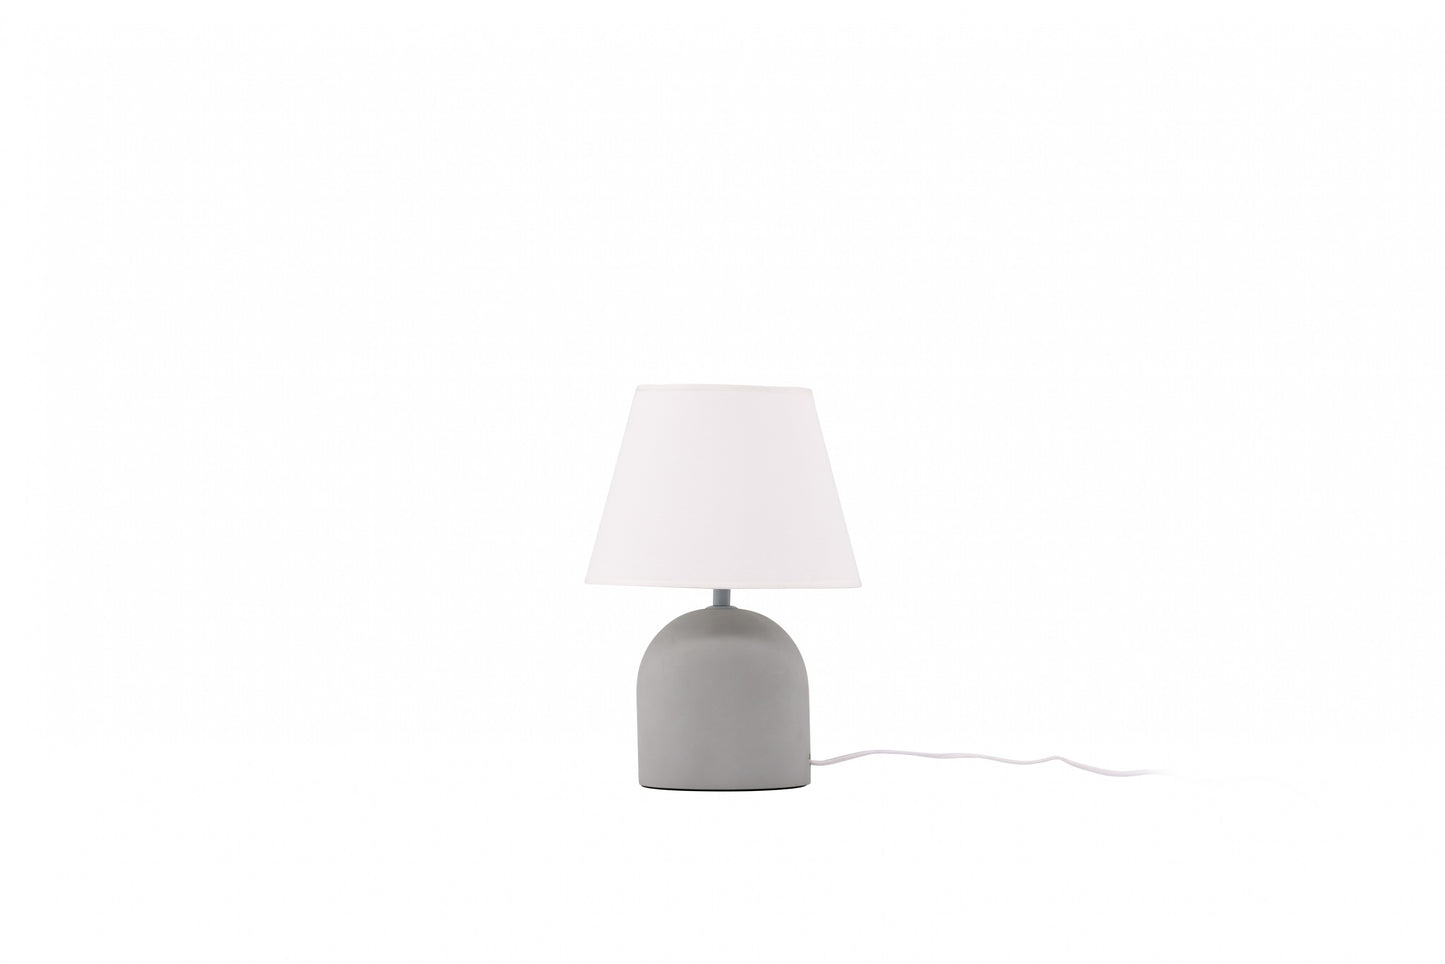 Styrsö Table Lamp - Concrete / Linen